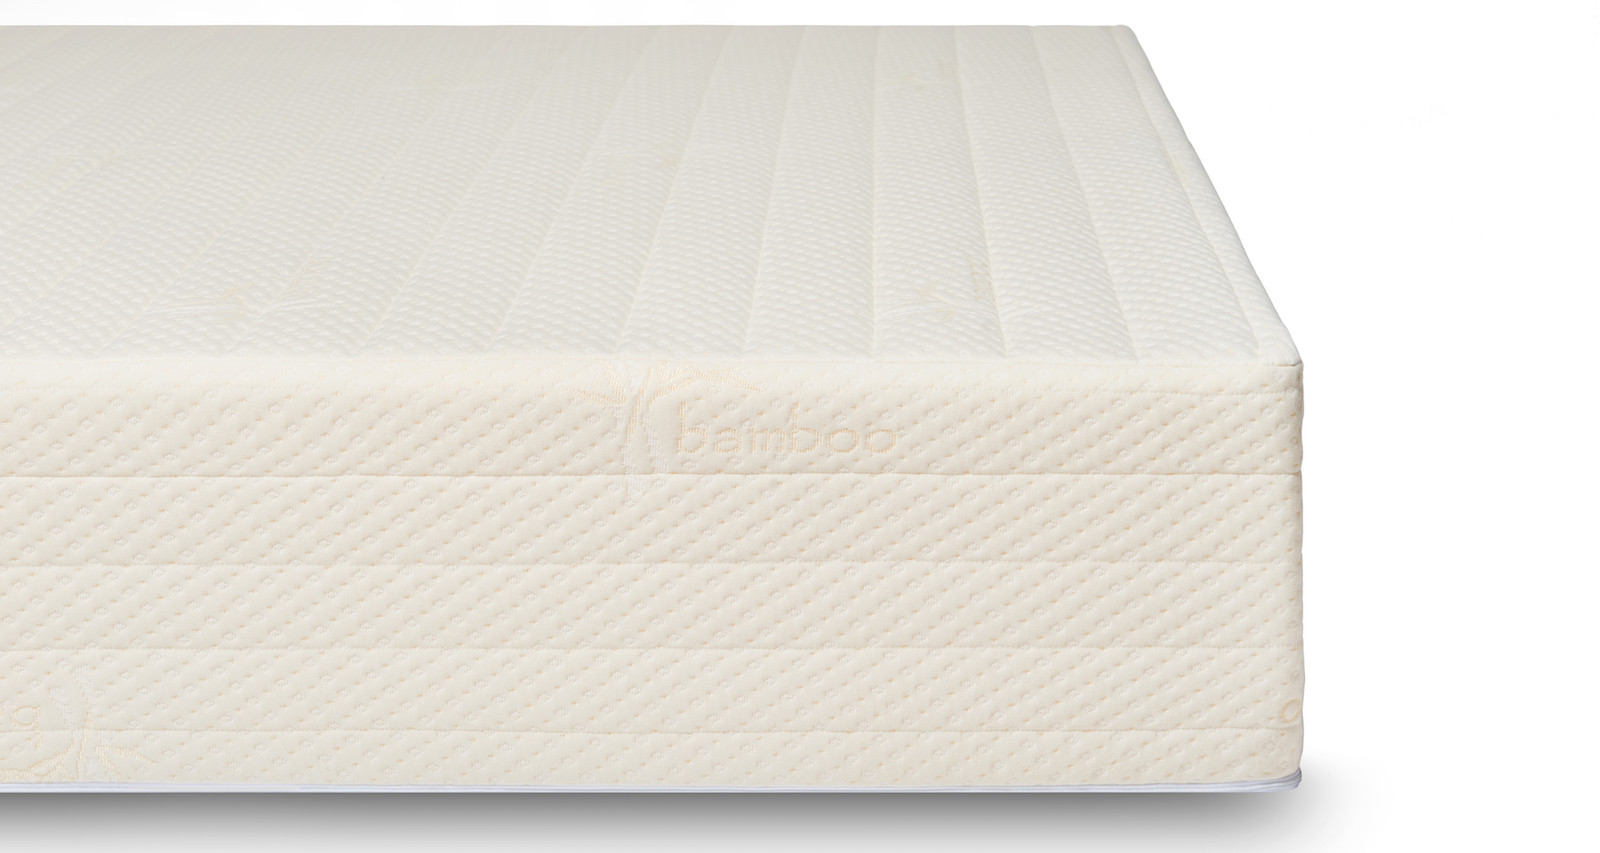 Brentwood Home Bamboo Gel 11 Memory Foam Mattress, girl on the mattress, brentwood mattress reviews